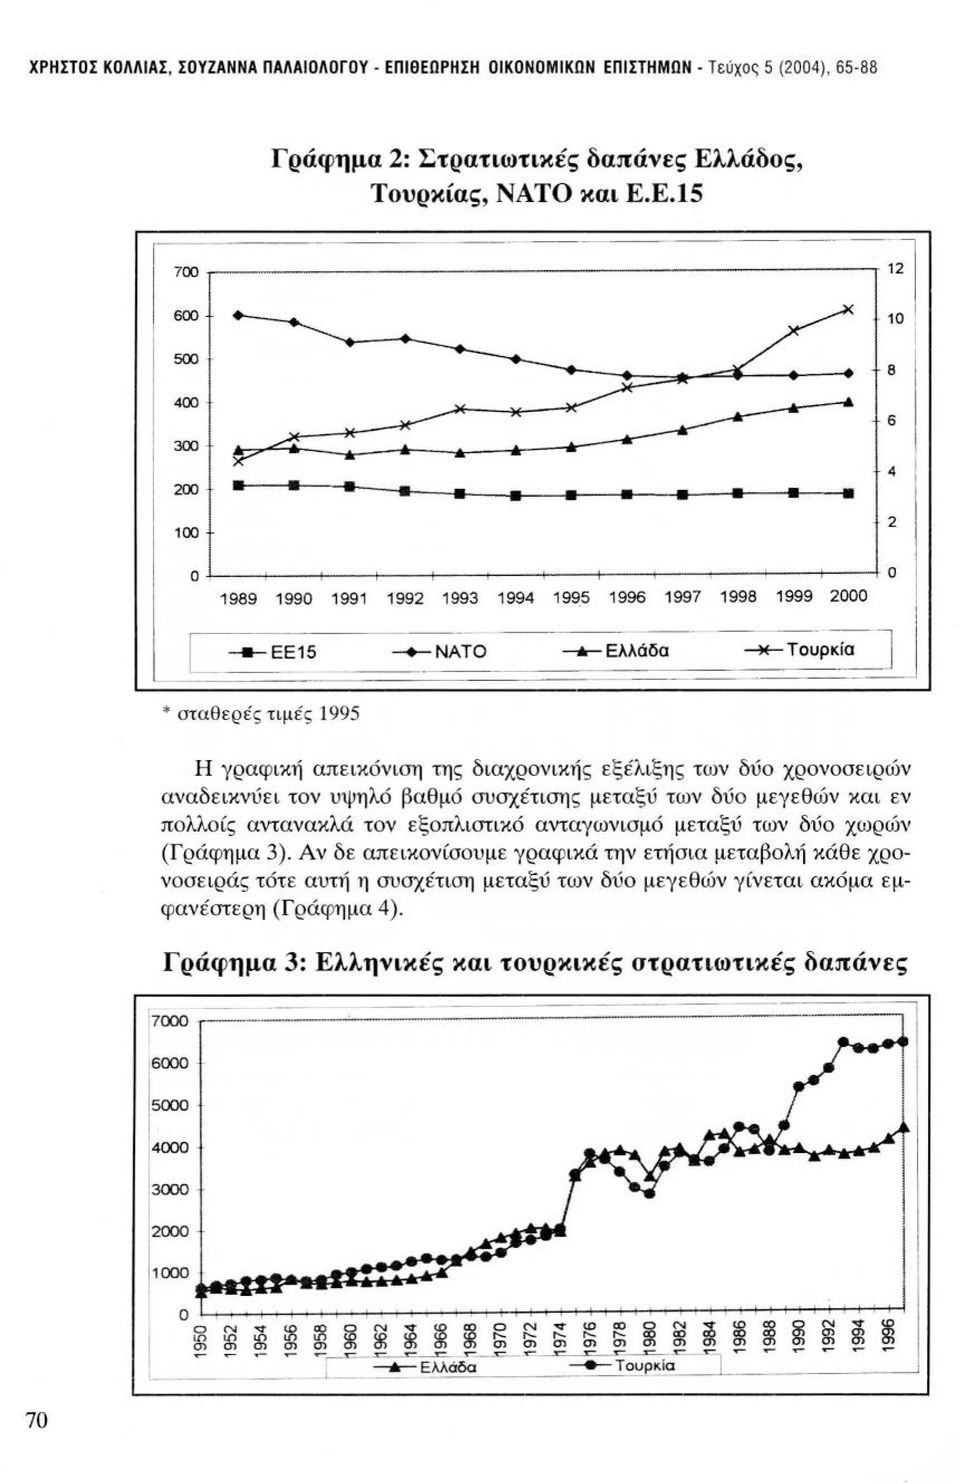 _Ελλάδα --*-Τουρκί~ * σταθερές τιμές 1995 Η γραφική απεικόνιση της διαχρονικής εξέλιξης των δύο χρονοσειρών αναδεικνύει τον υψηλό βαθμό συσχέτισης μεταξύ των δύο μεγεθών και εν πολλοίς αντανακλά